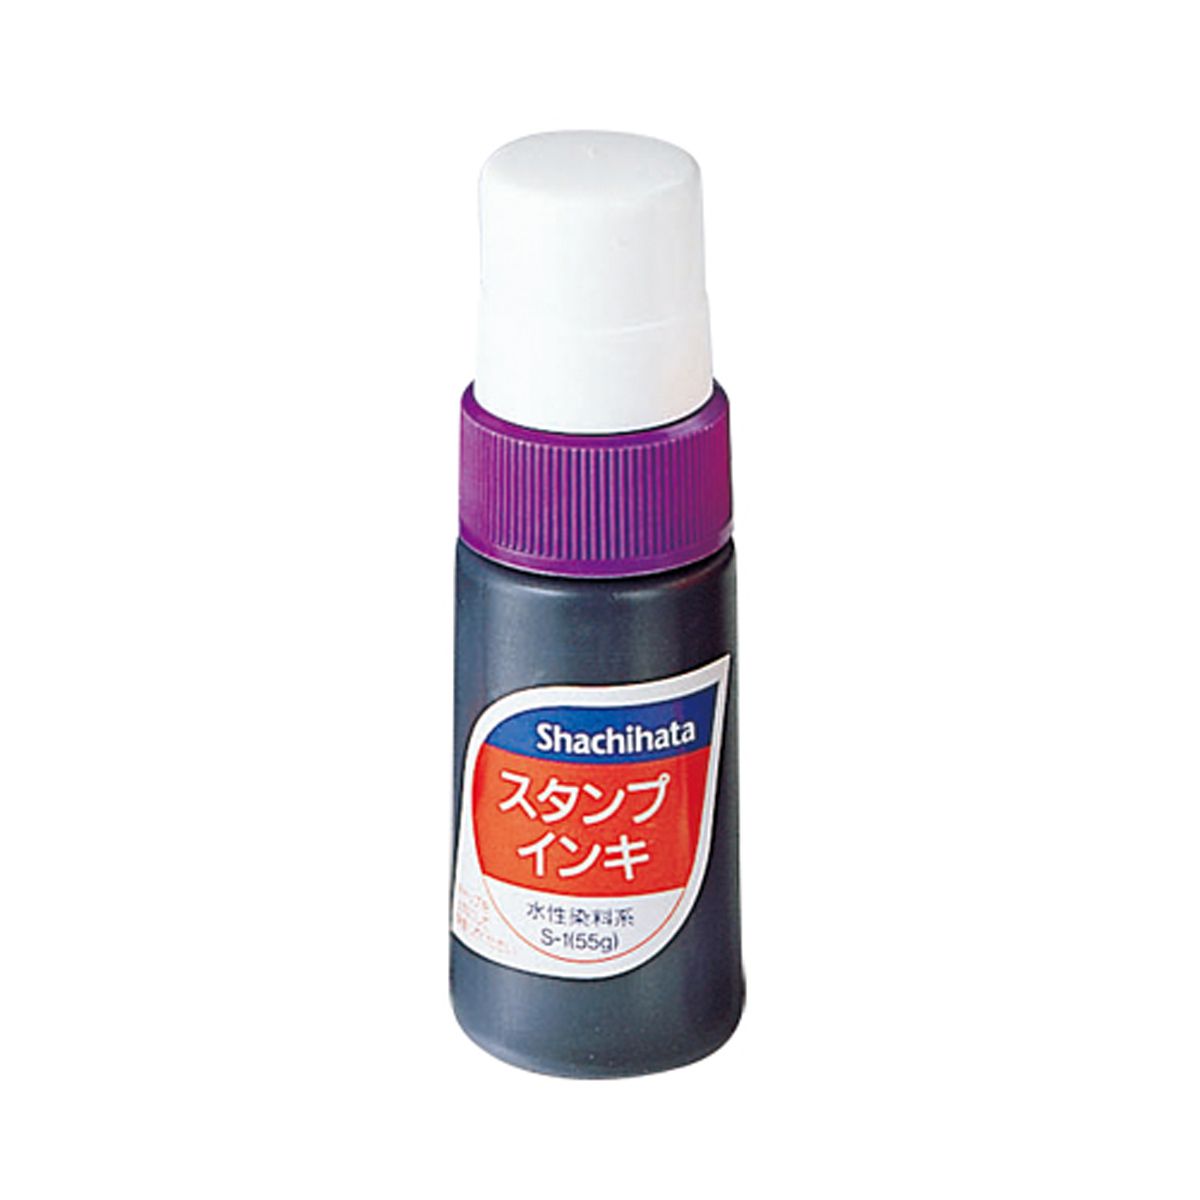 スタンプインキ(ゾルスタンプ台専用) 小瓶 紫